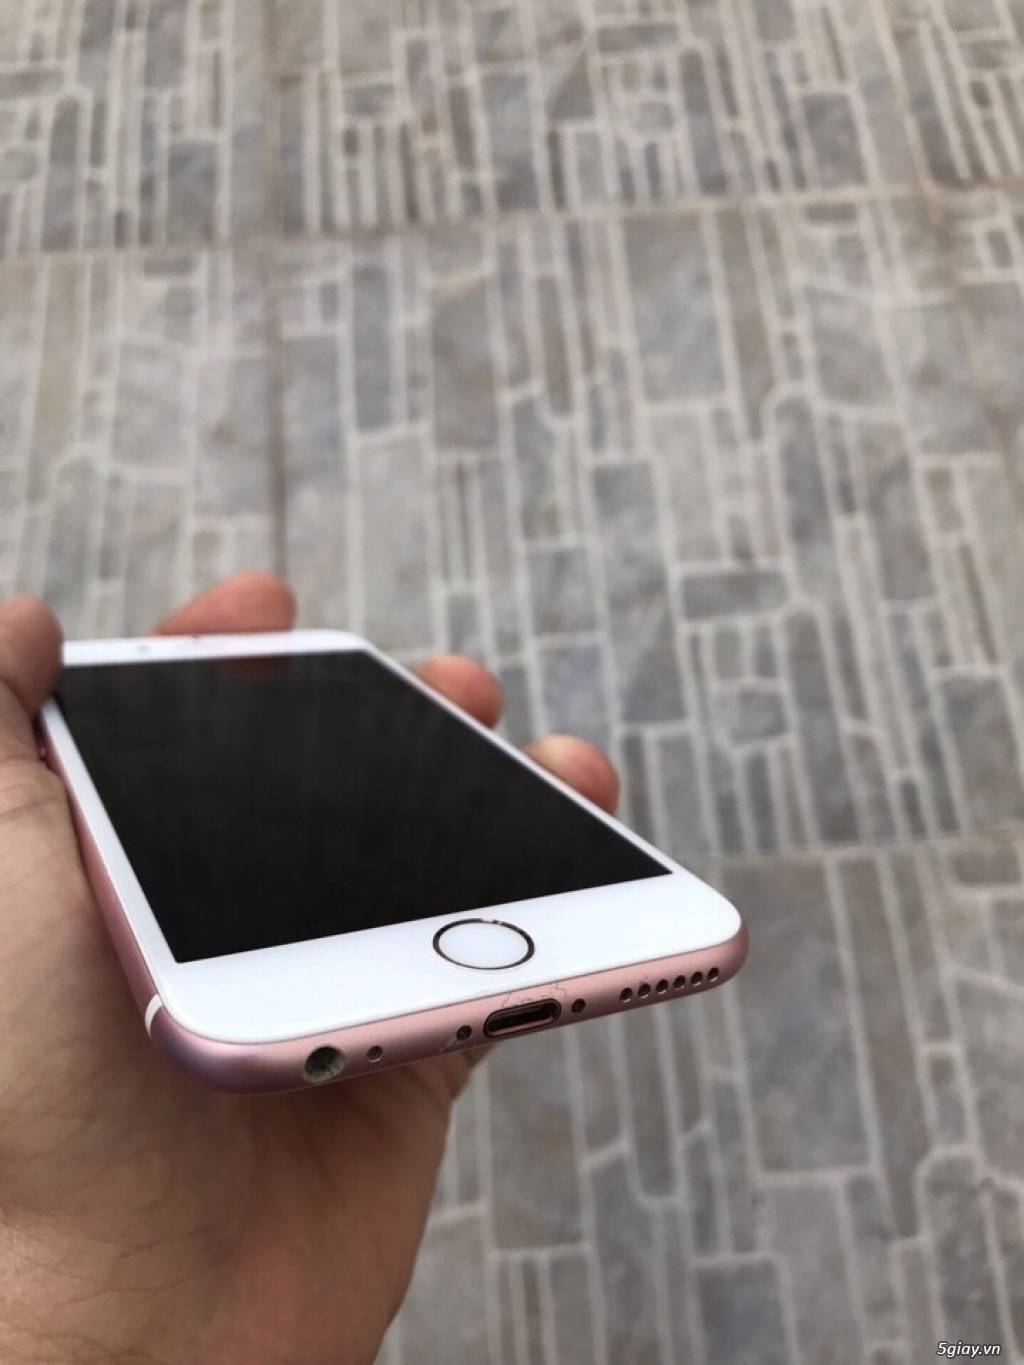 Iphone 6s-16gb-rose gold- quốc tế- máy đẹp 99% , zin all, - 1